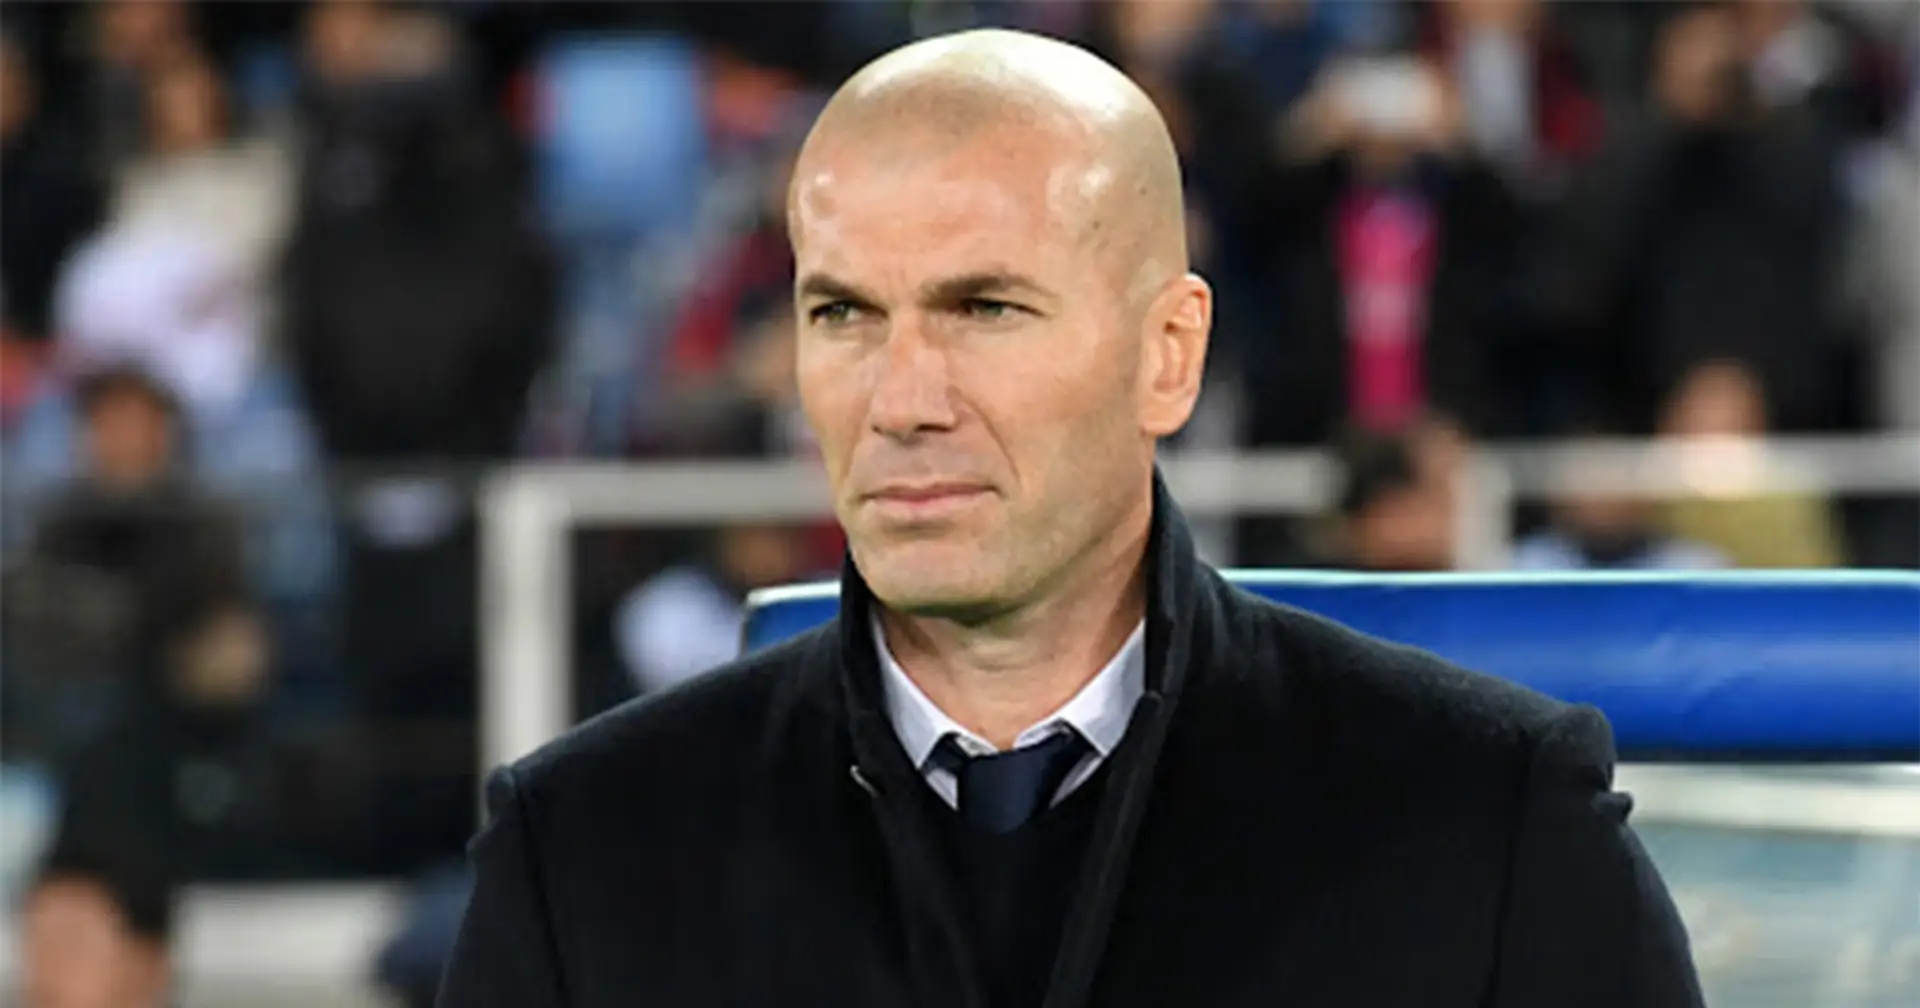 Zidane schließt Bevorzugung bei Real Madrid aus: "Es gibt hier niemanden, der über dem anderen steht"